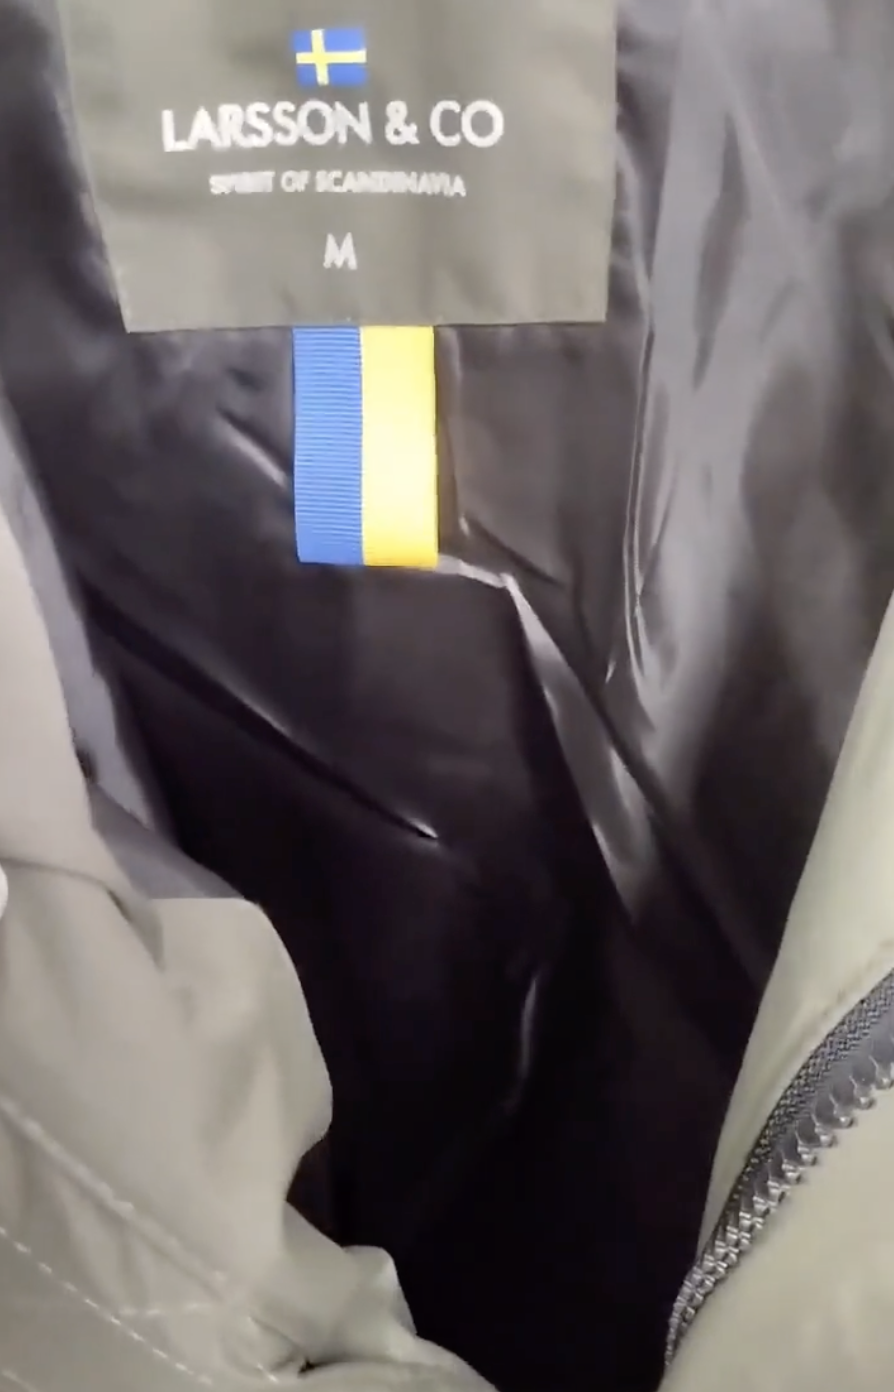 Росіяни масово пишуть доноси на одяг зі Швеції, сприймаючи шведський прапор за український. Відео